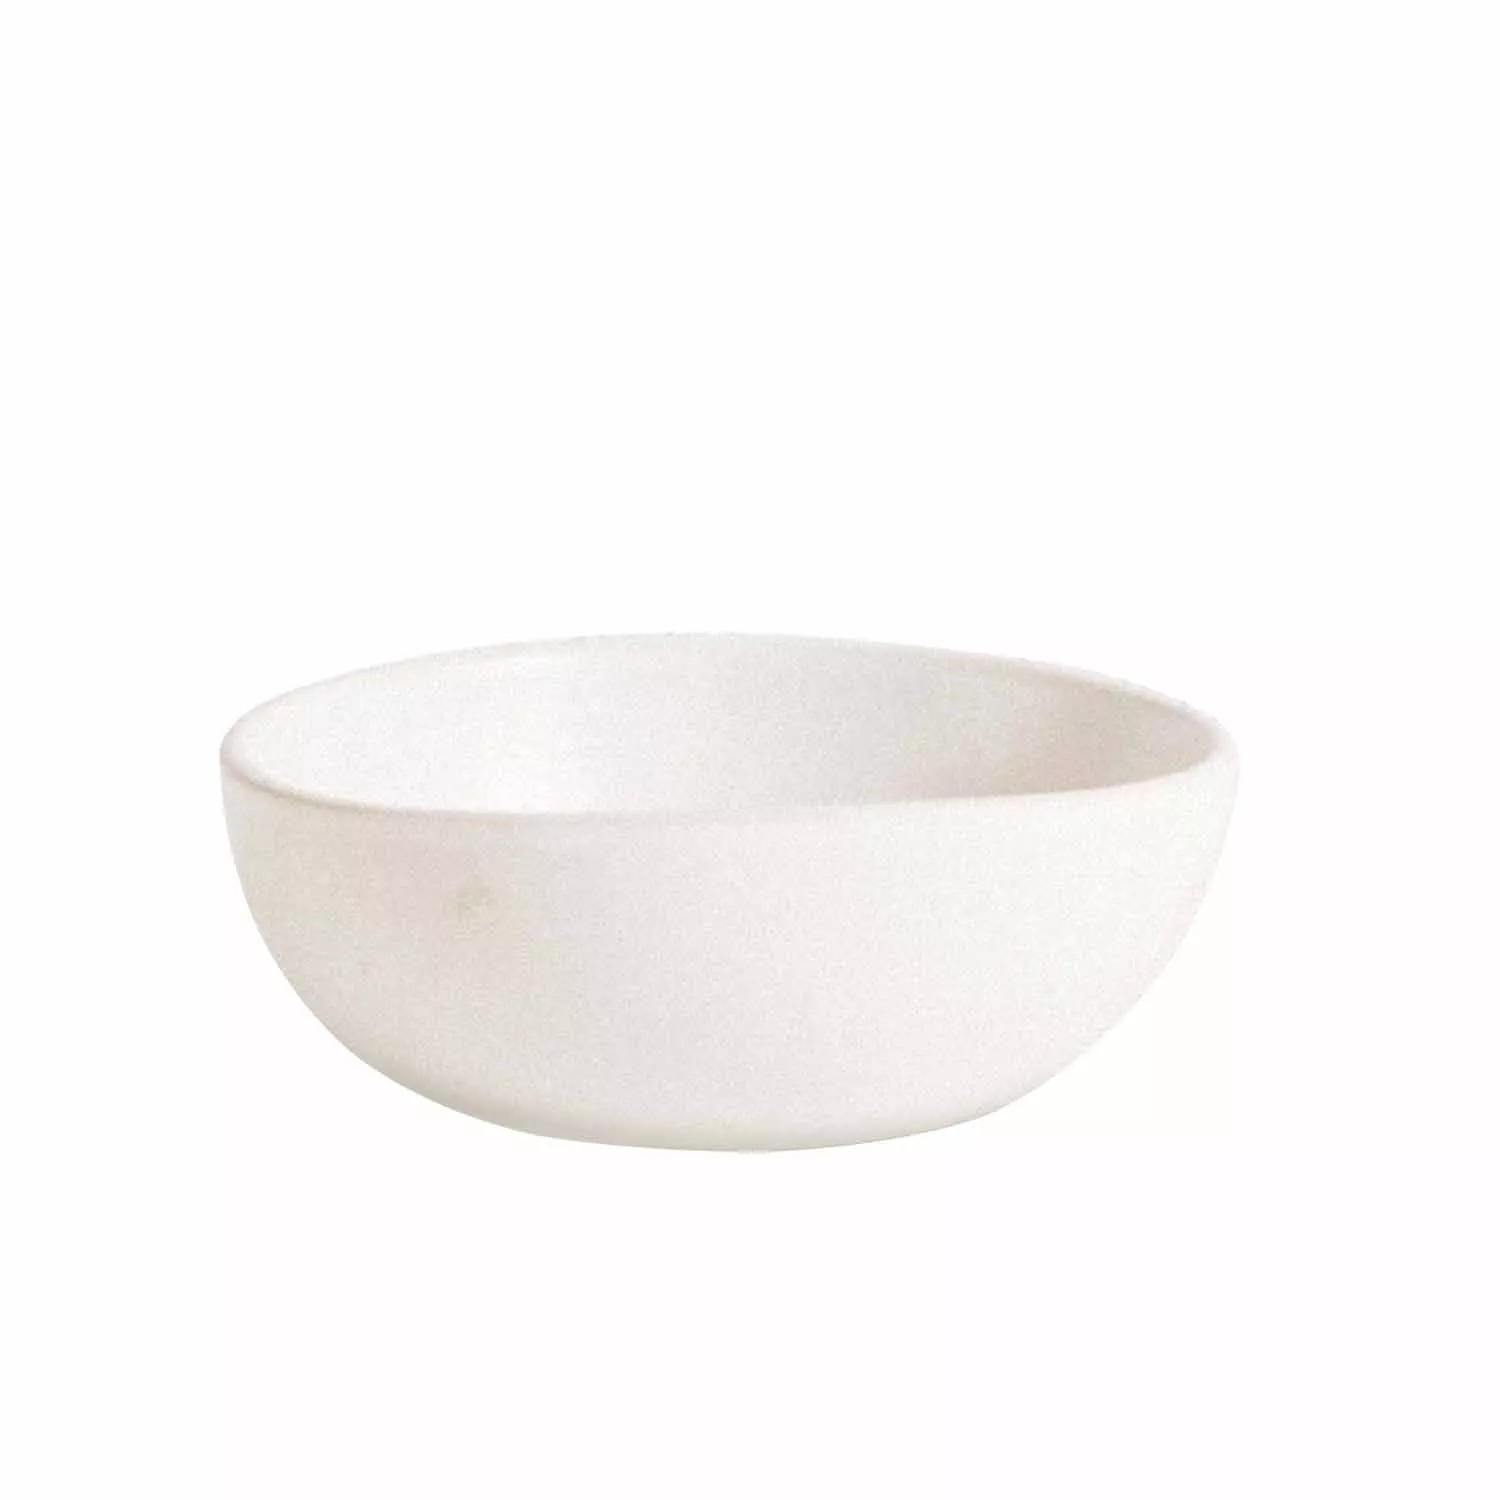 Gharyan Stoneware Dadasi Condiment Bowl, Set of 4